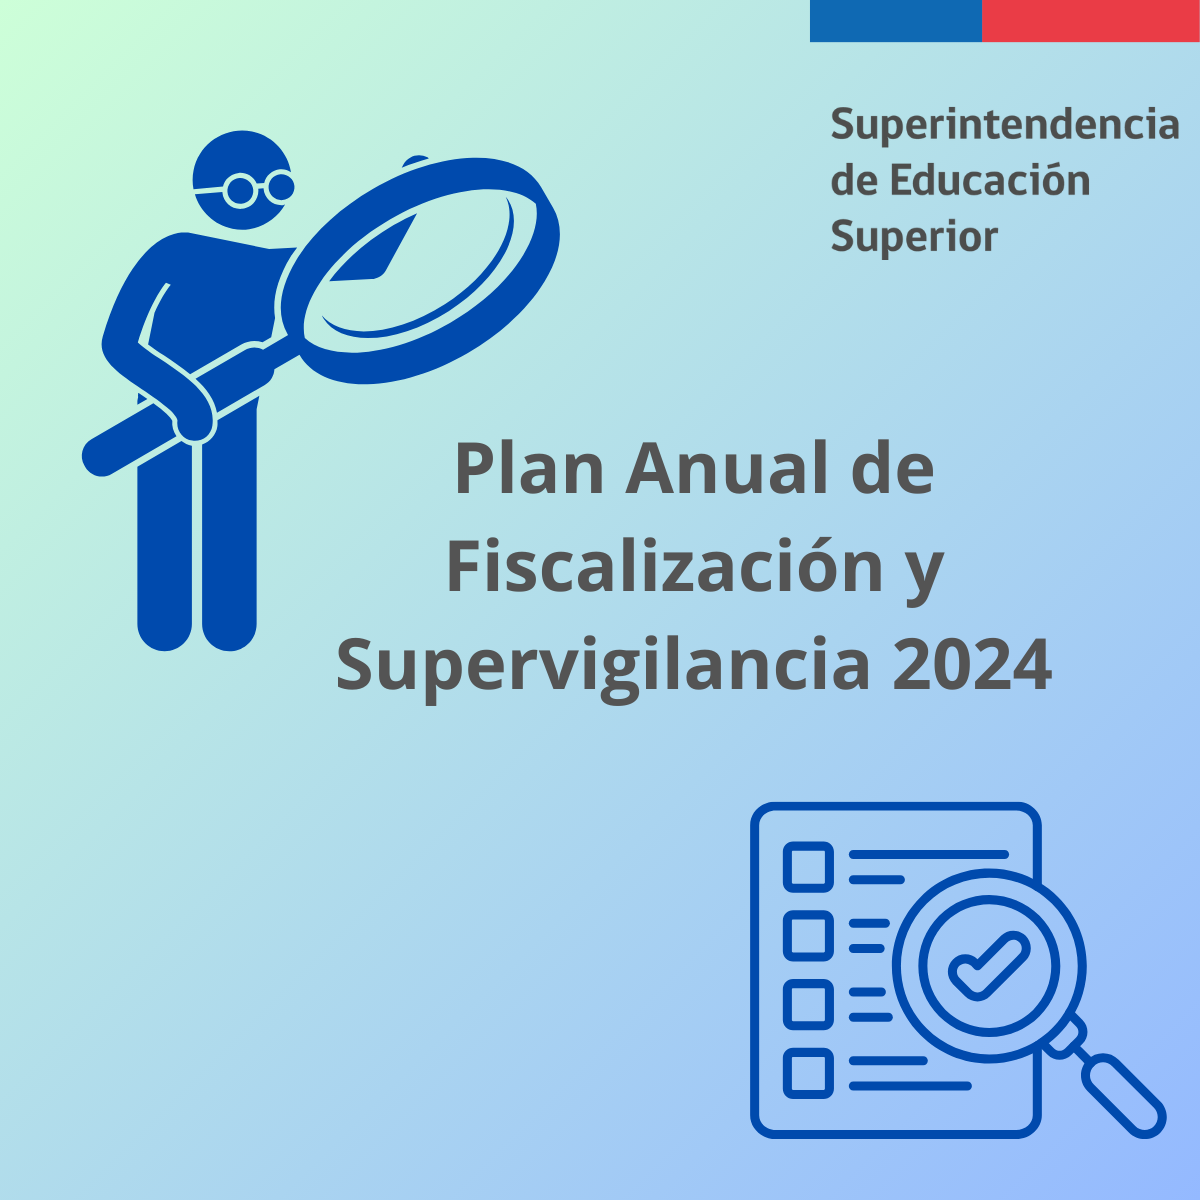 Los seis ejes del Plan Anual de Fiscalización y Supervisión 2024